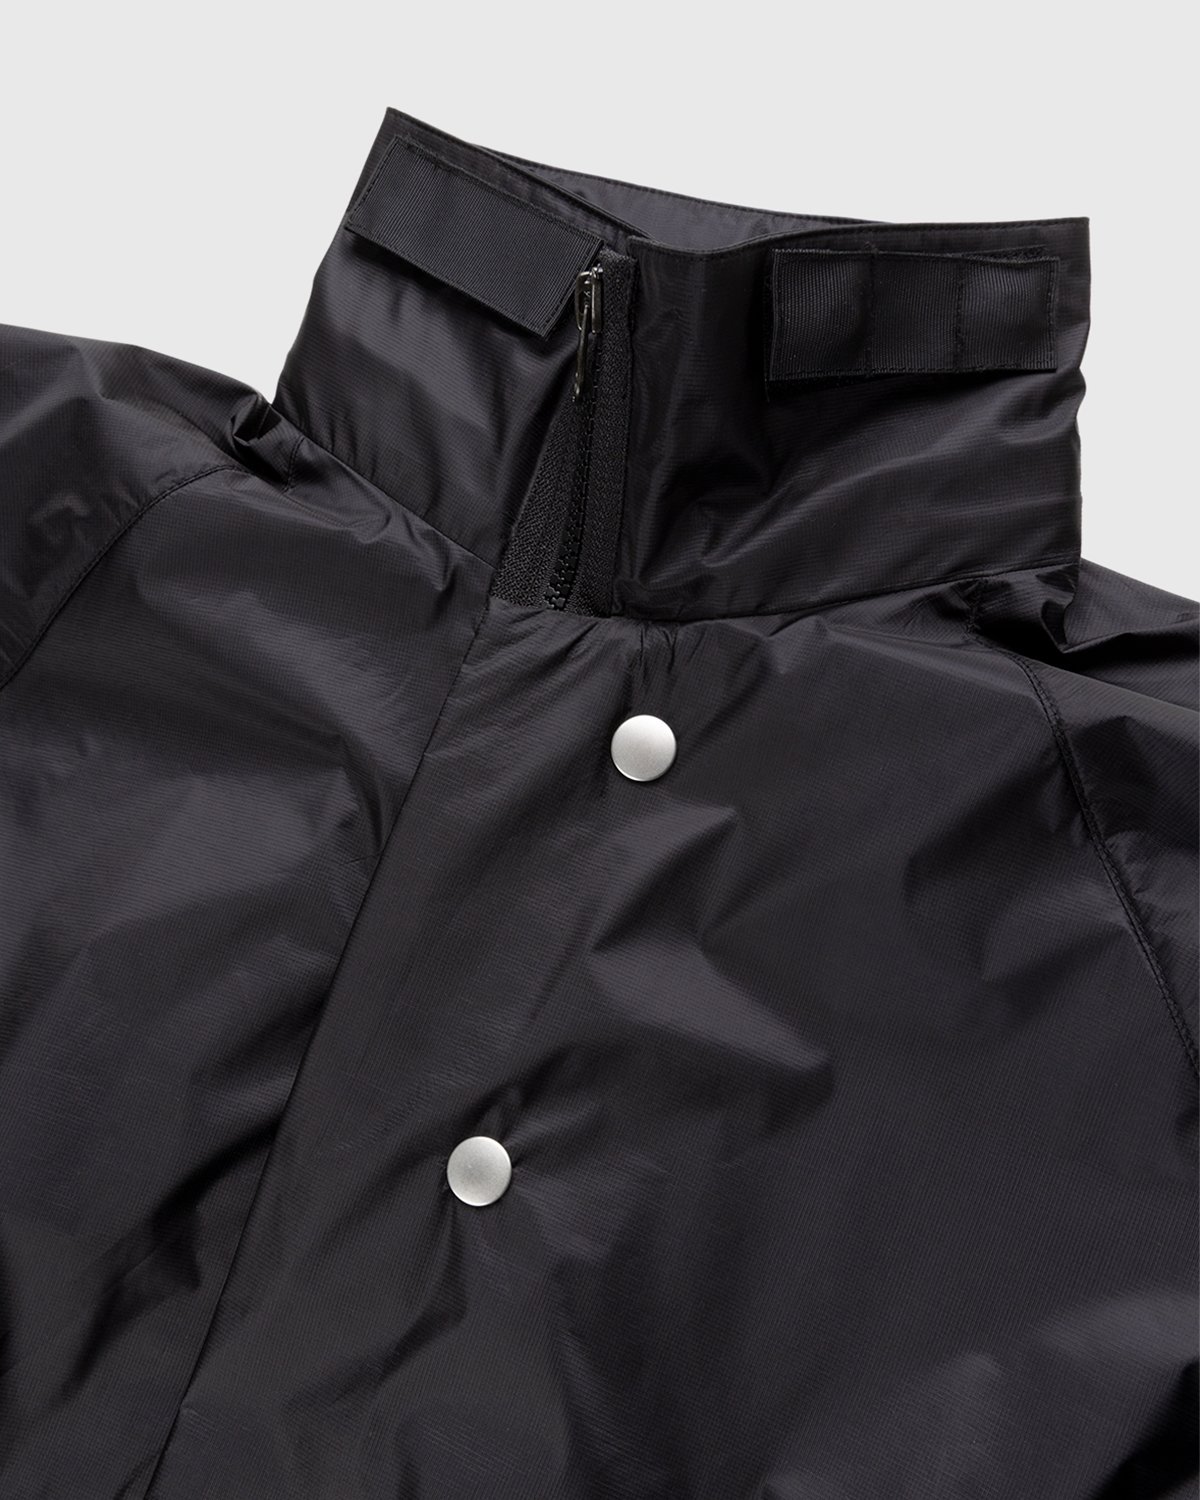 ACRONYM - J95-WS Jacket Black - Clothing - Black - Image 4